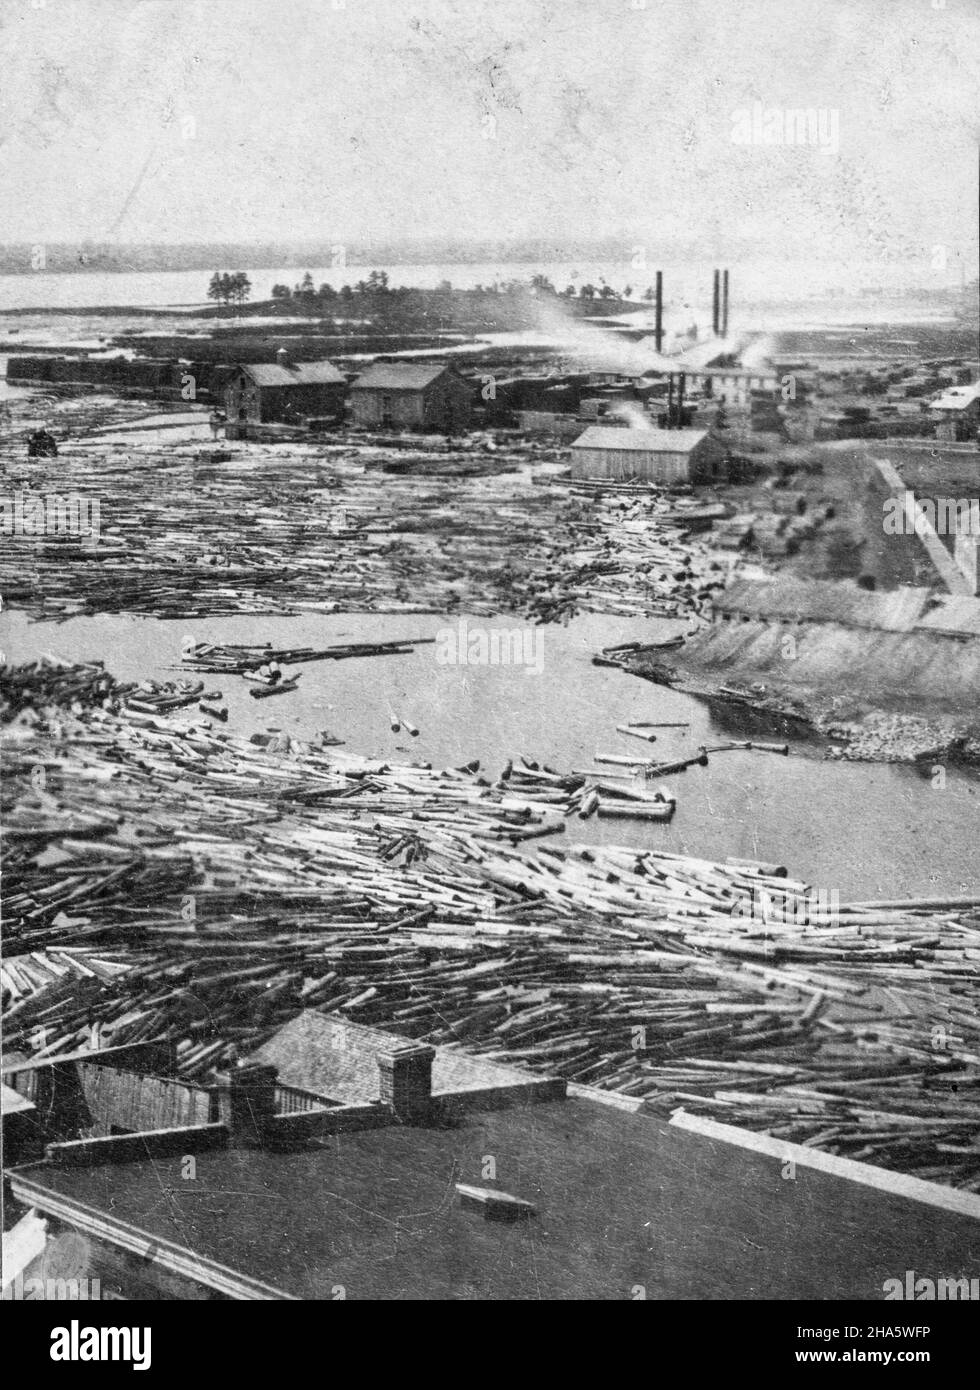 Rivière Moira à Belleville (Ontario), prise par William Spence Clarke, probablement de la tour de l'hôtel de ville, vers 1920.L'île de Zwick est visible au loin, avec les moulins de bois d'oeuvre de Holton sur la rue Water au centre de l'image et de nombreux rondins dans la rivière au premier plan. Banque D'Images